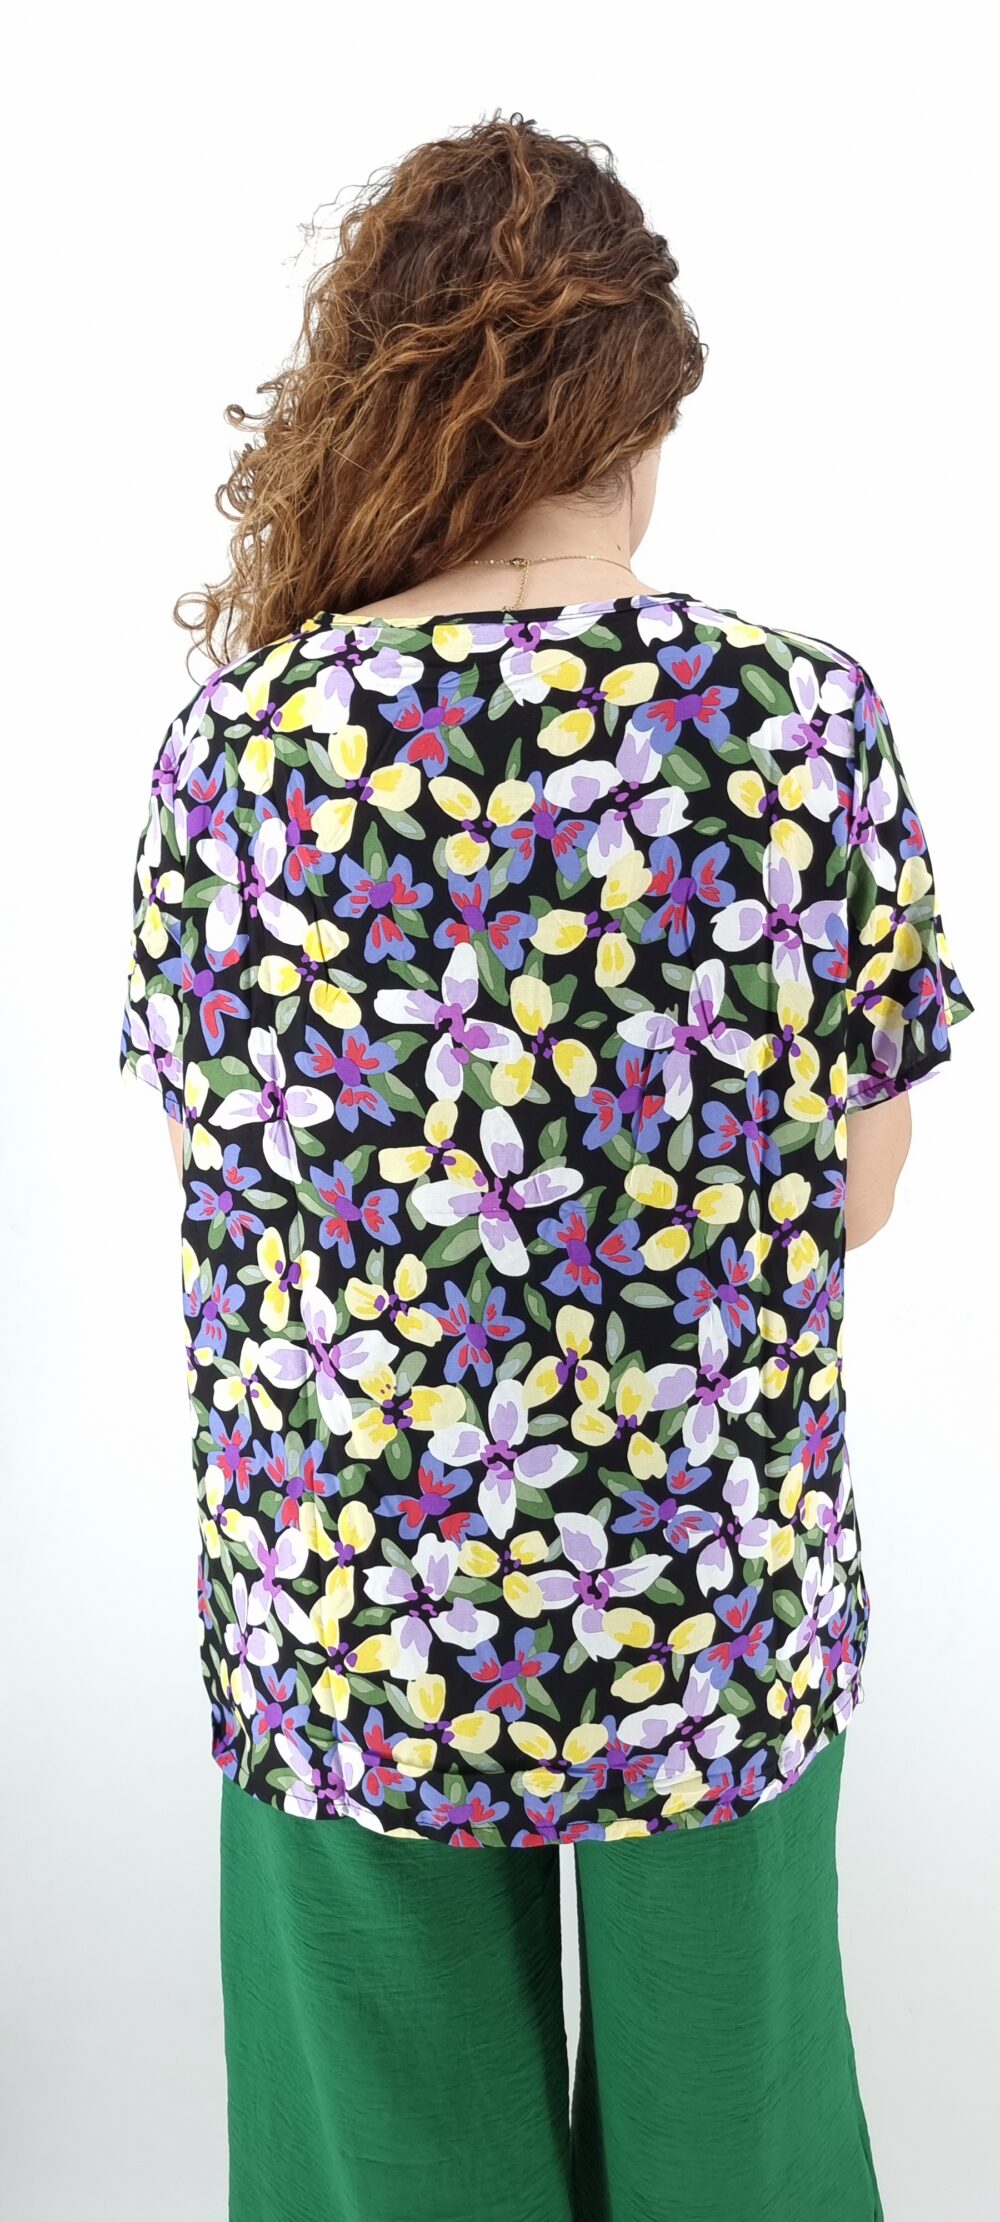 Μπλούζα με μεγάλο φλοράλ μοτίβο σε φαρδιά γραμμή μαύρο μωβ